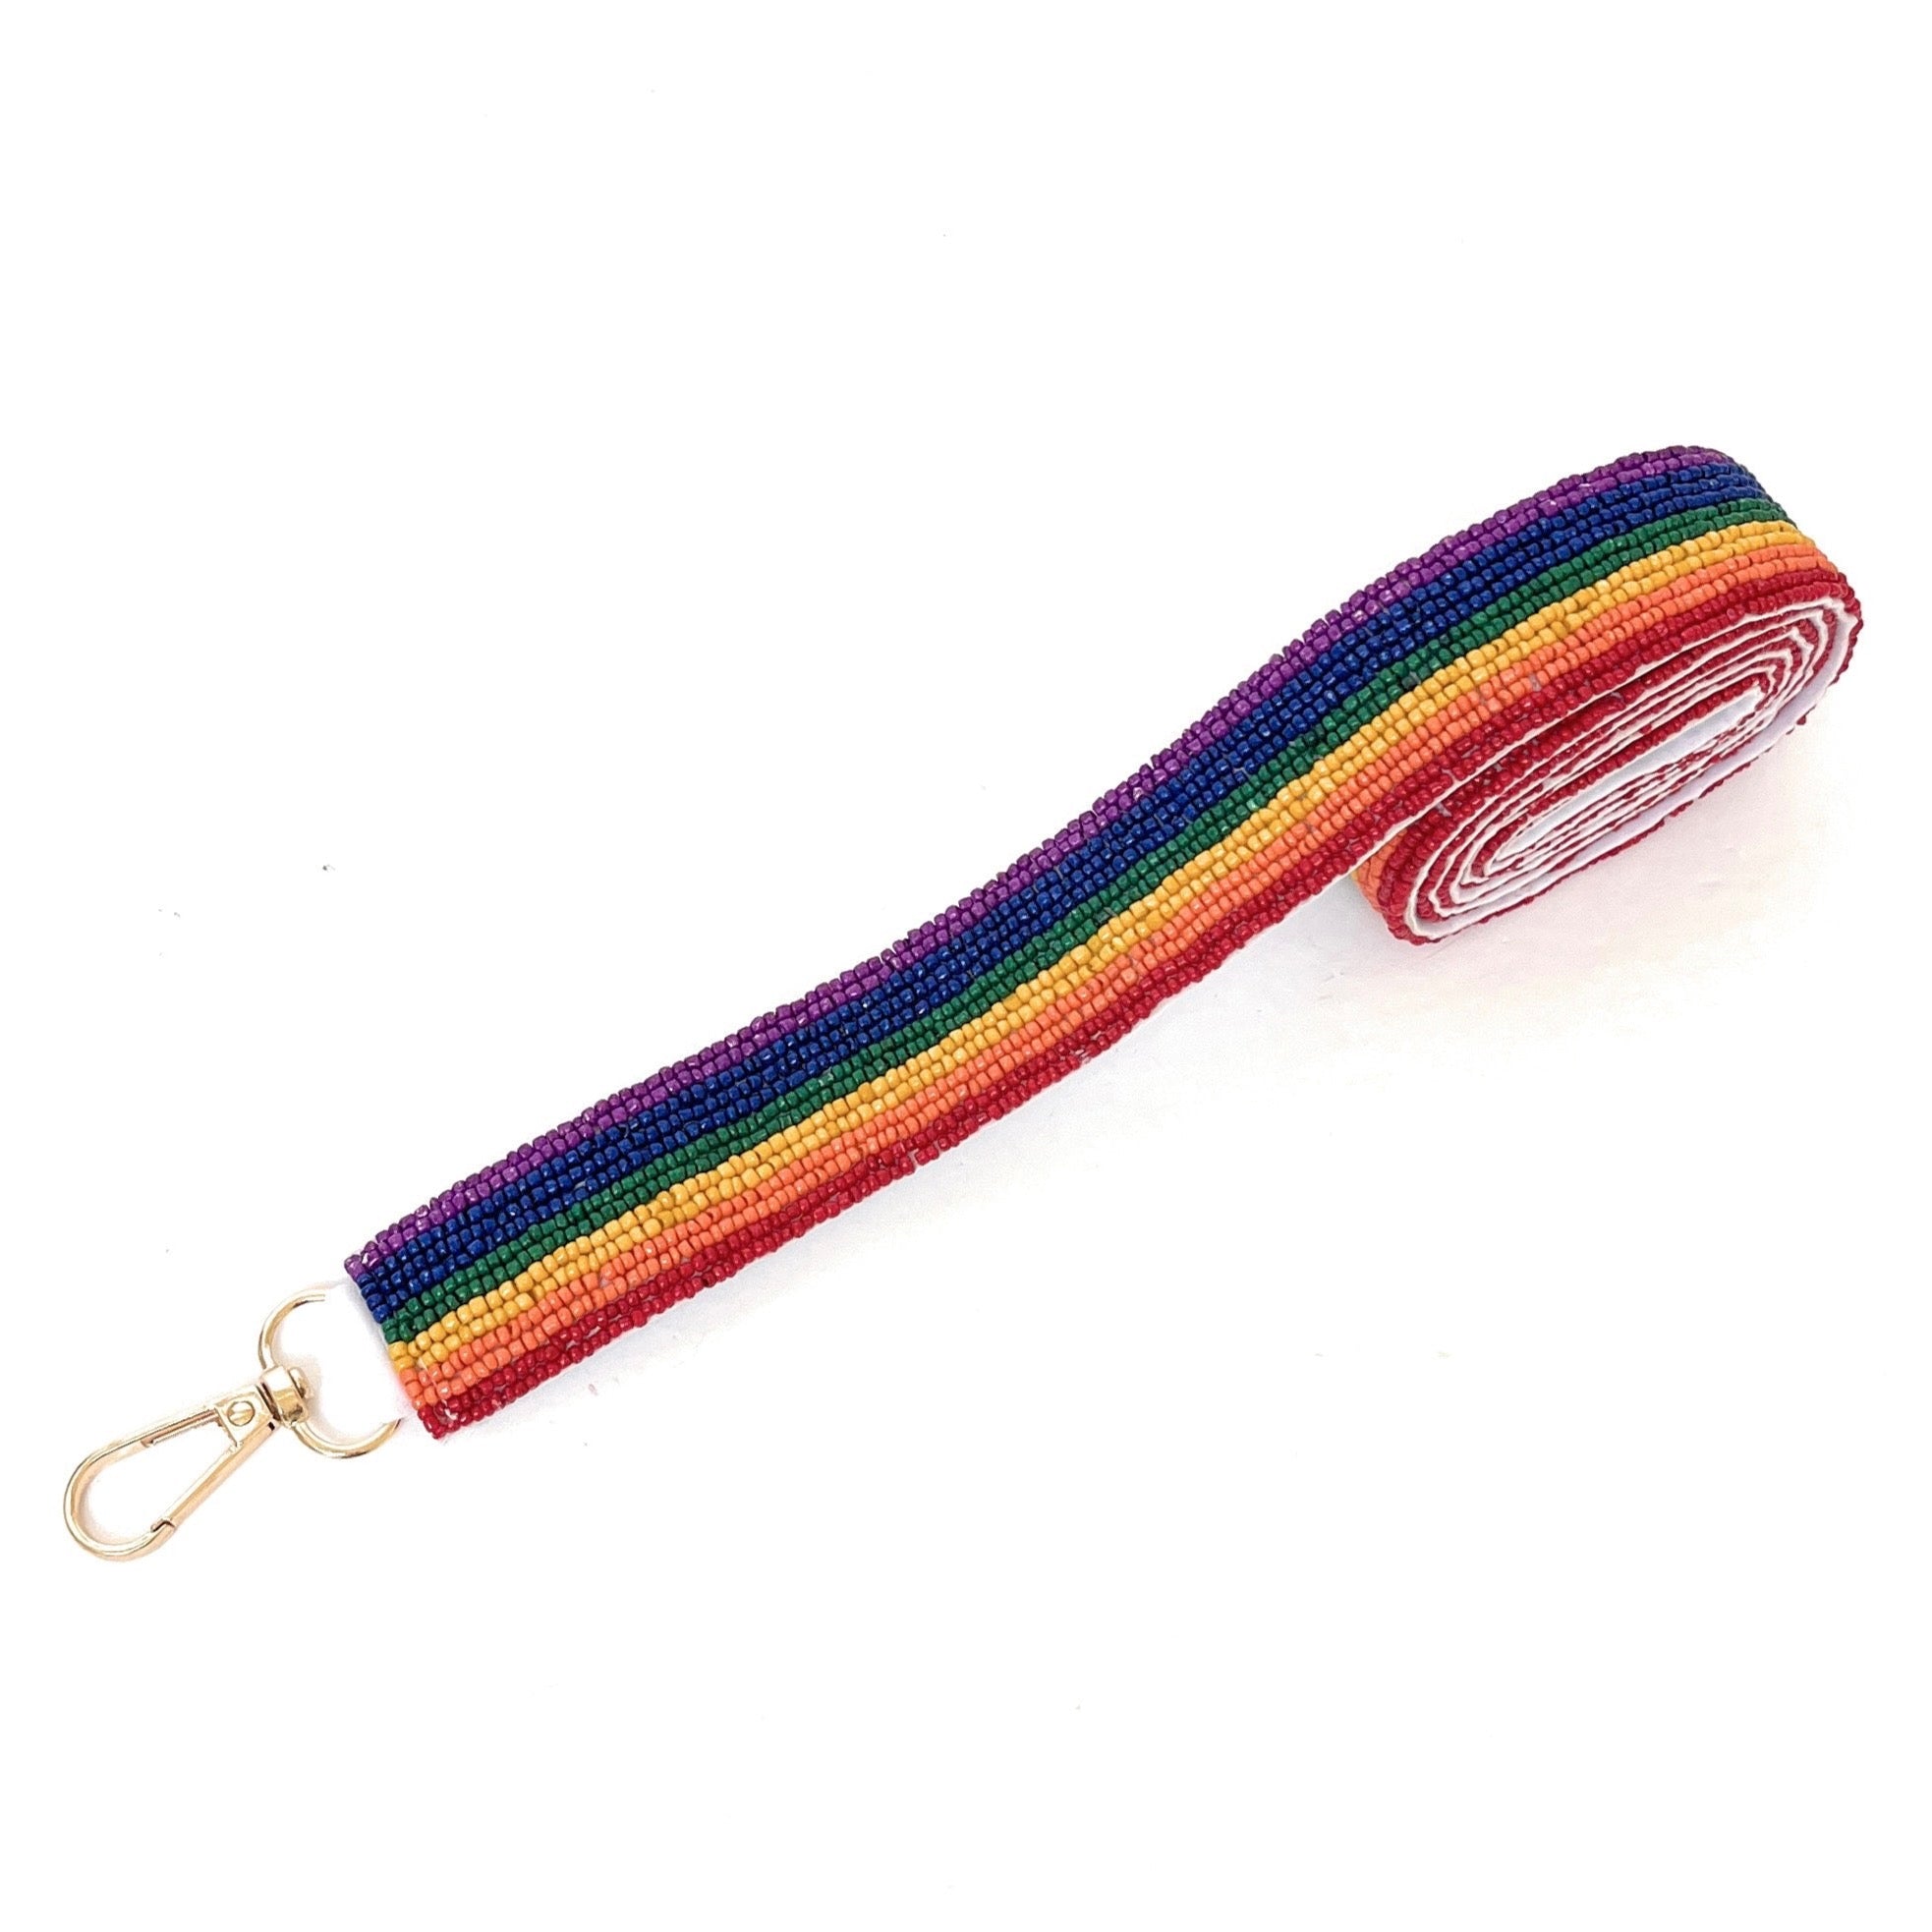 Buy Crochet Pride Crossbody Purse, Rainbow Purse, Crochet Rainbow Purse,  Rainbow Crochet Gay Pride Lgbtqiapride Shoulder Bag Online in India - Etsy